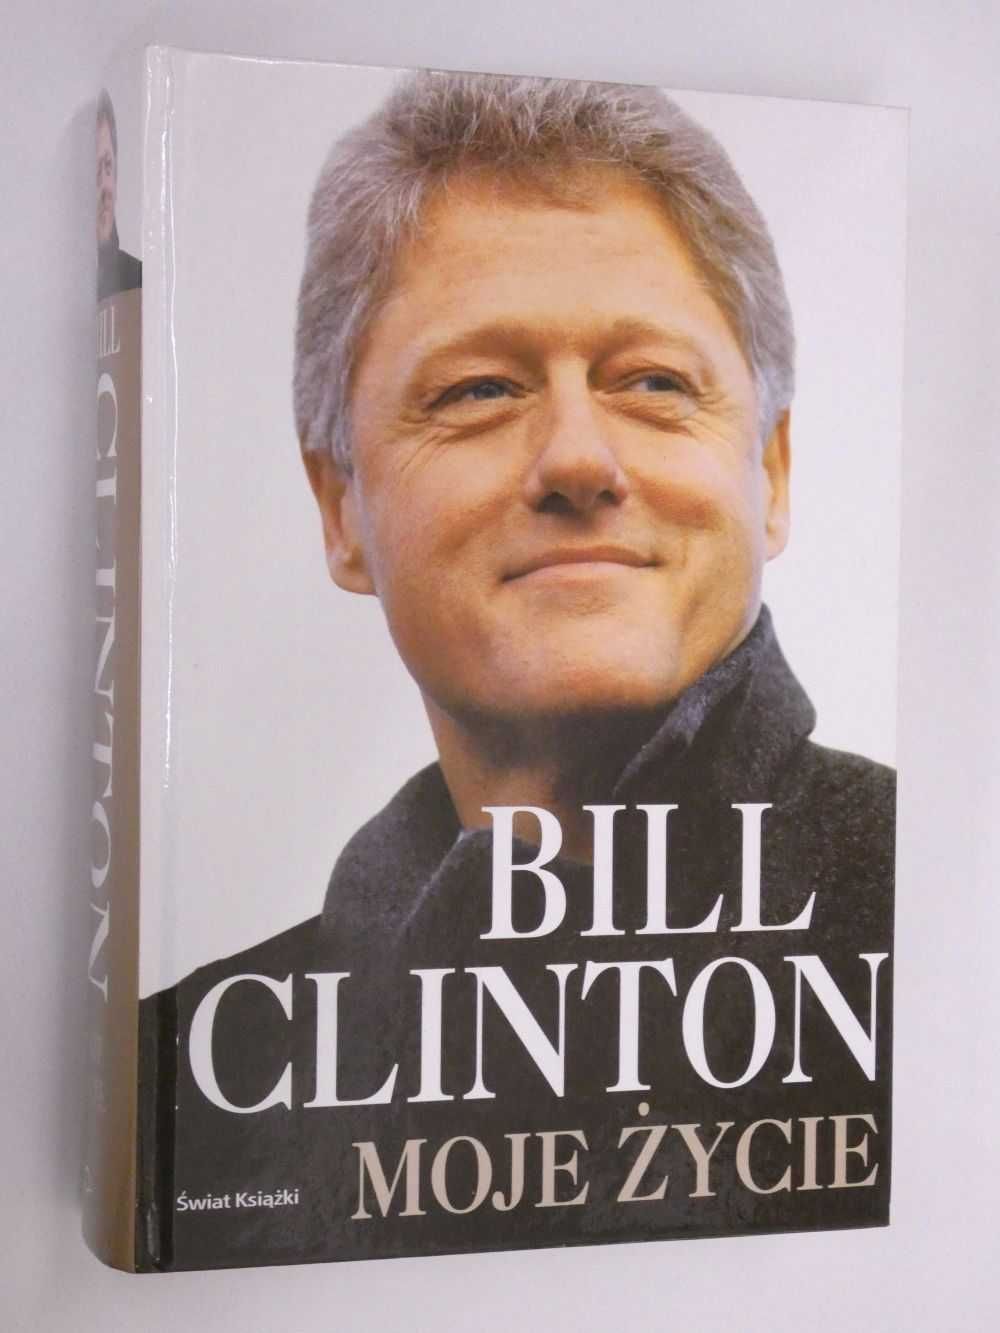 Bill Clinton moje życie